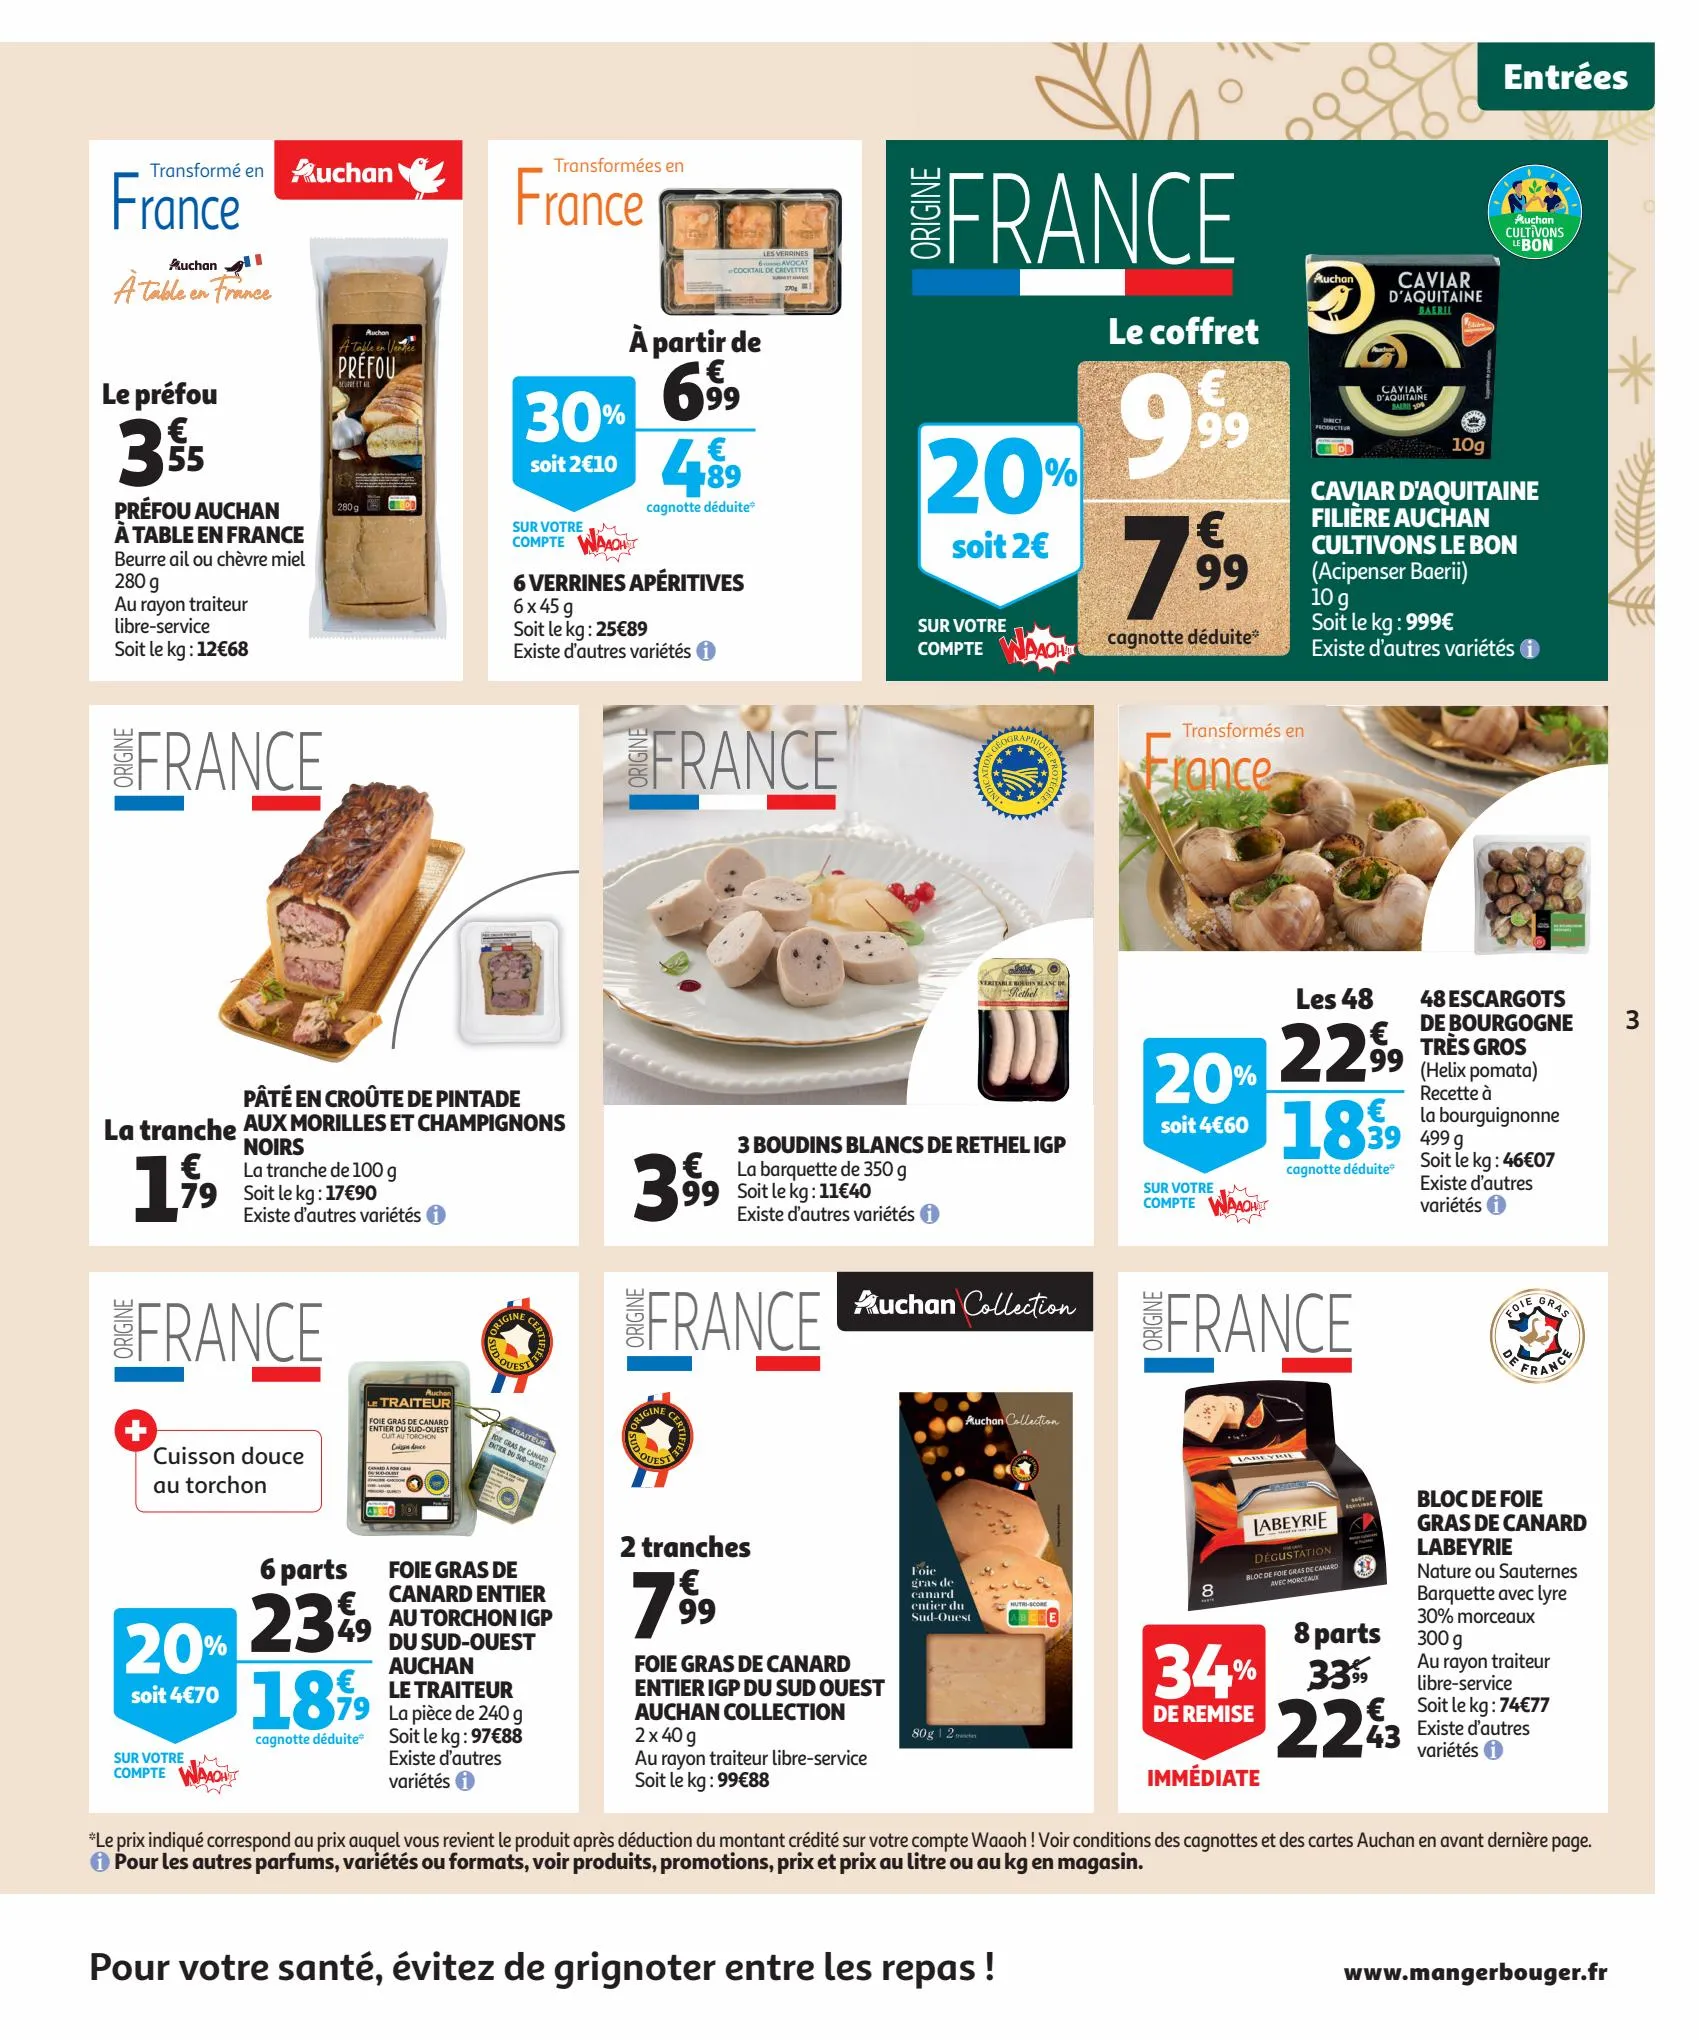 Catalogue Guide gastronomique, page 00003